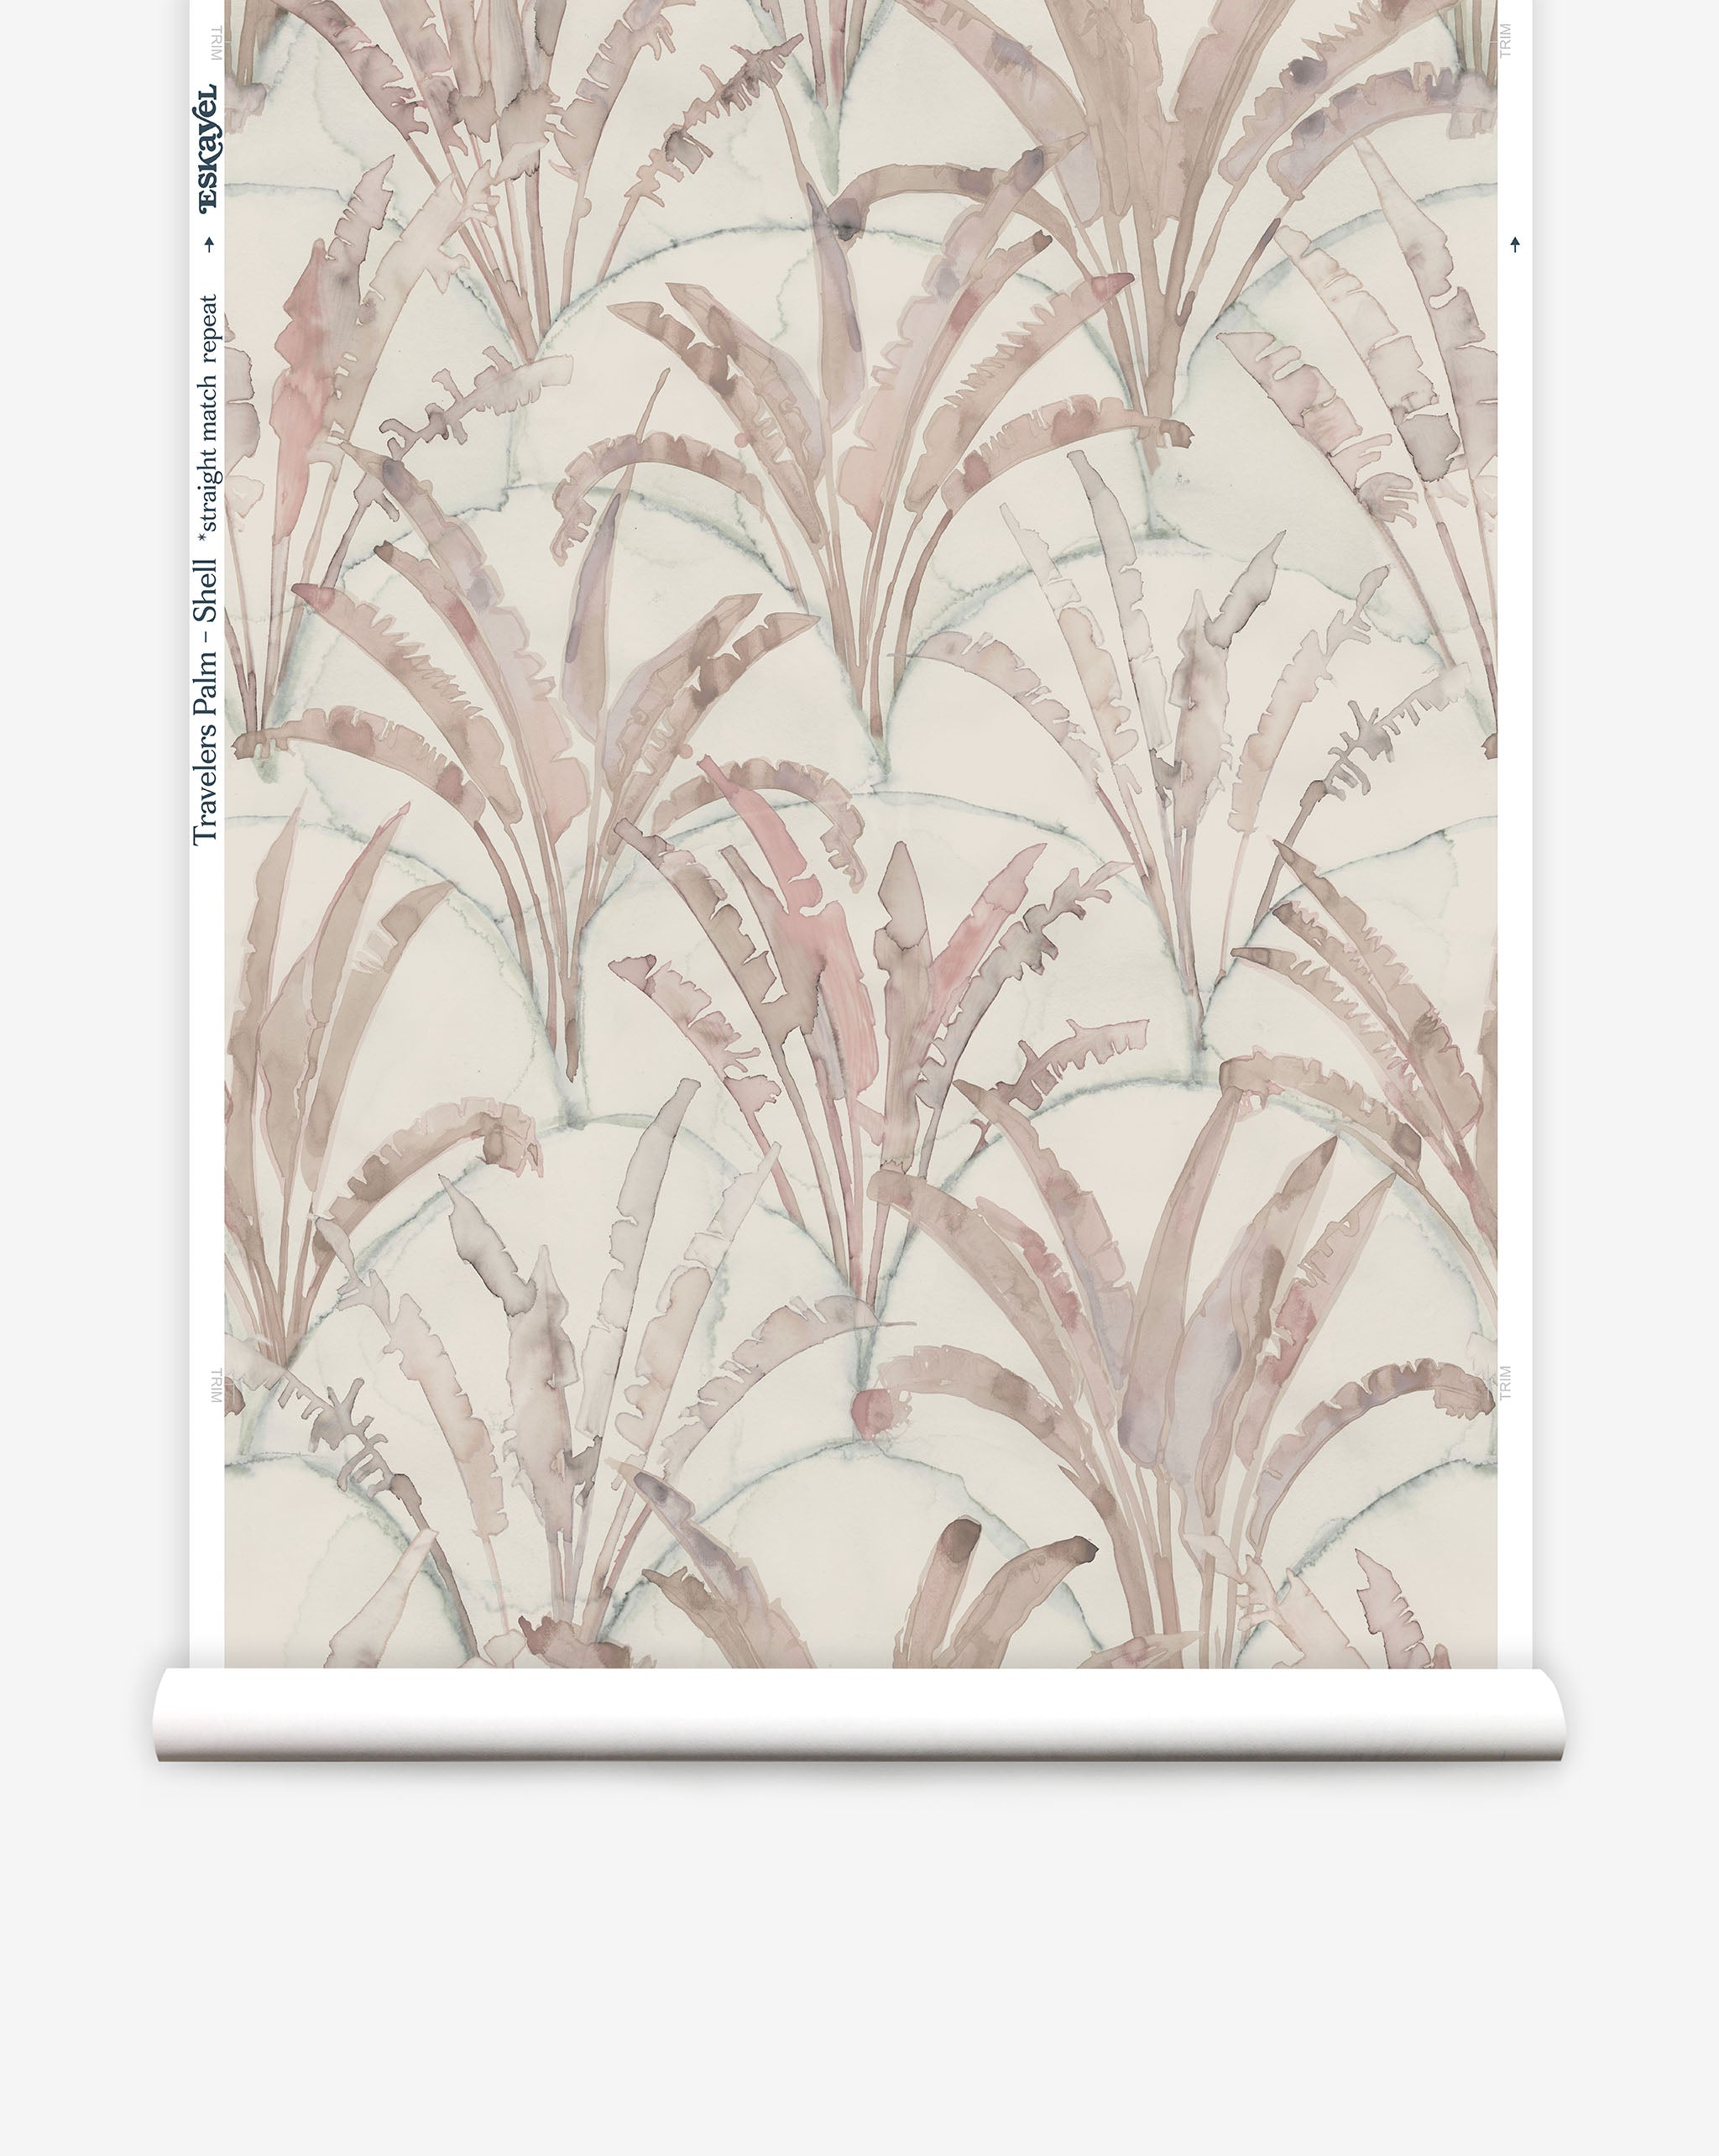 Naoshima Shell Wallpaper | Hand-printed linen cushions, wallpaper and  homewares